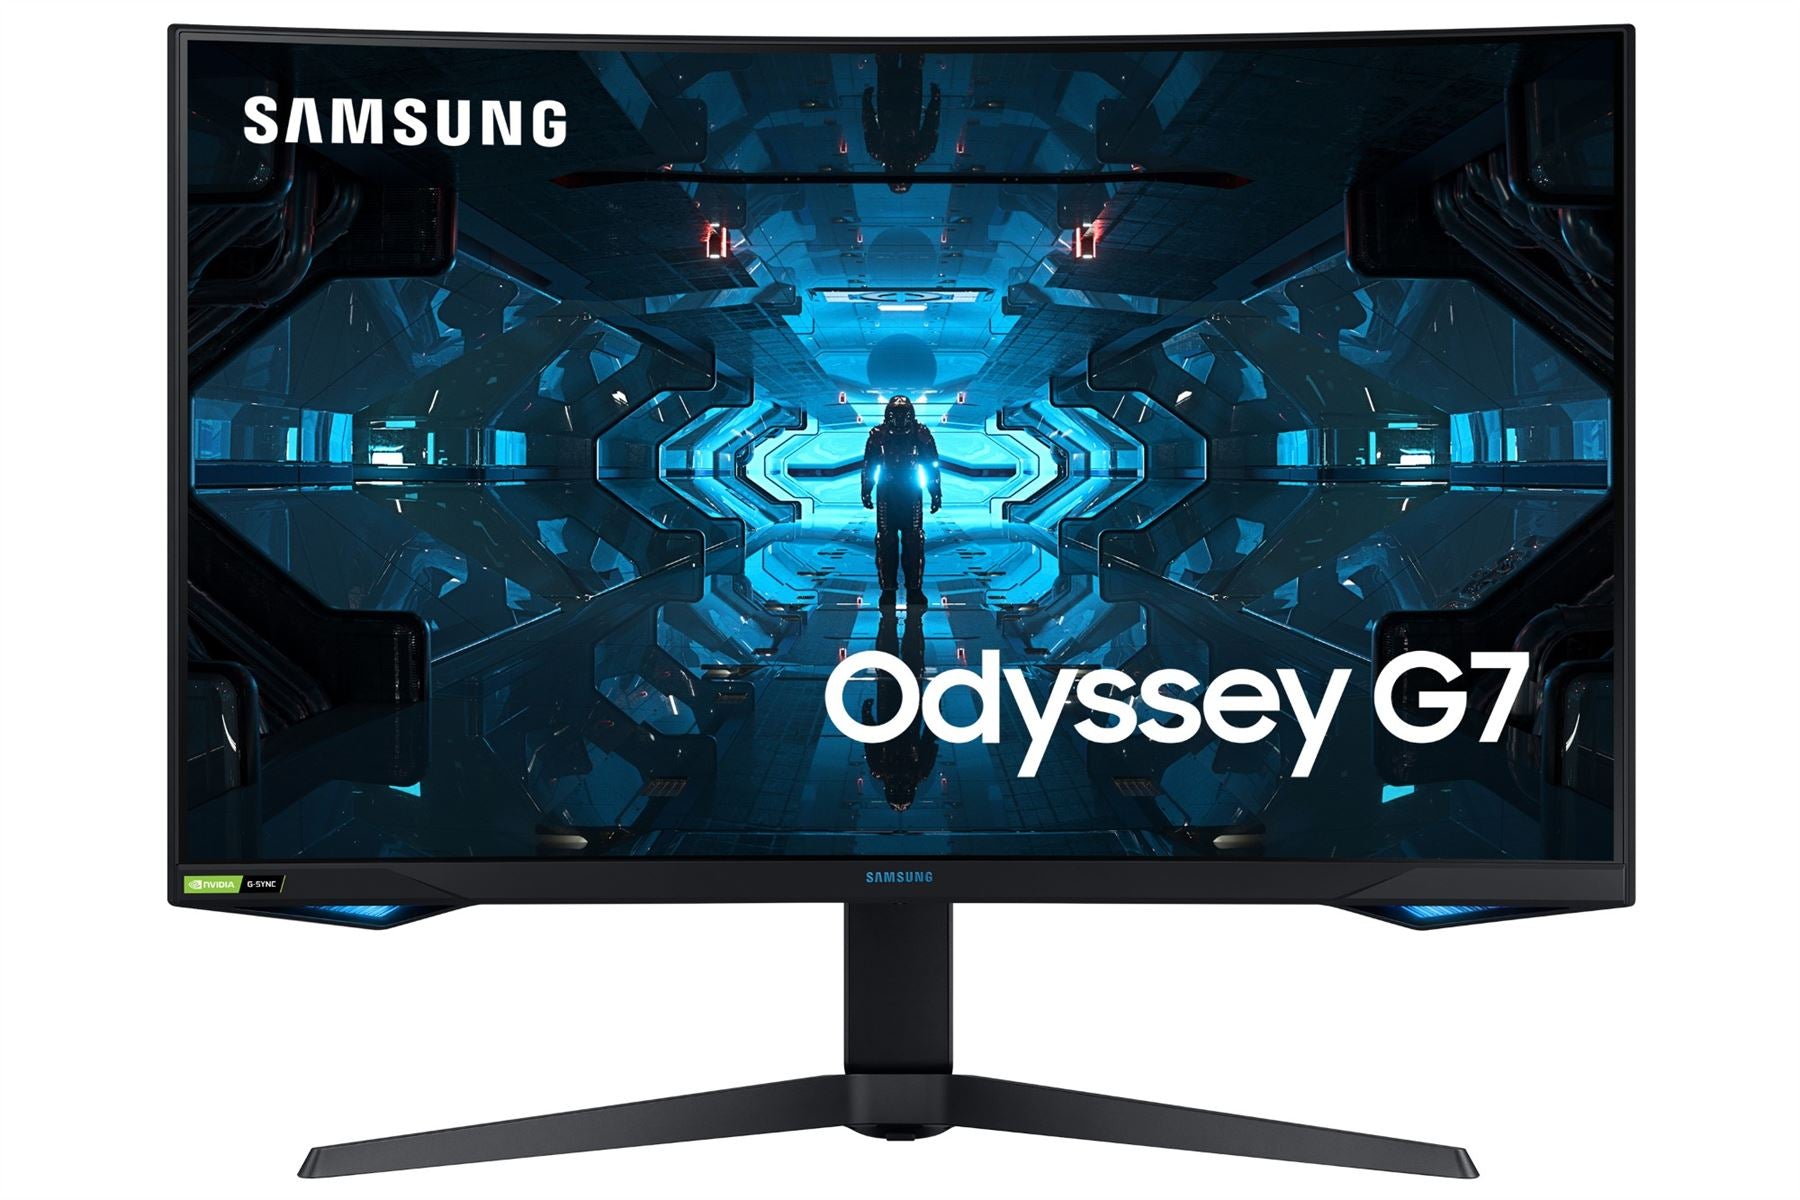 Samsung Odyssey G75 WQHD 31.5" 240Hz Curved Gaming Monitor with AMD FreeSync - Black